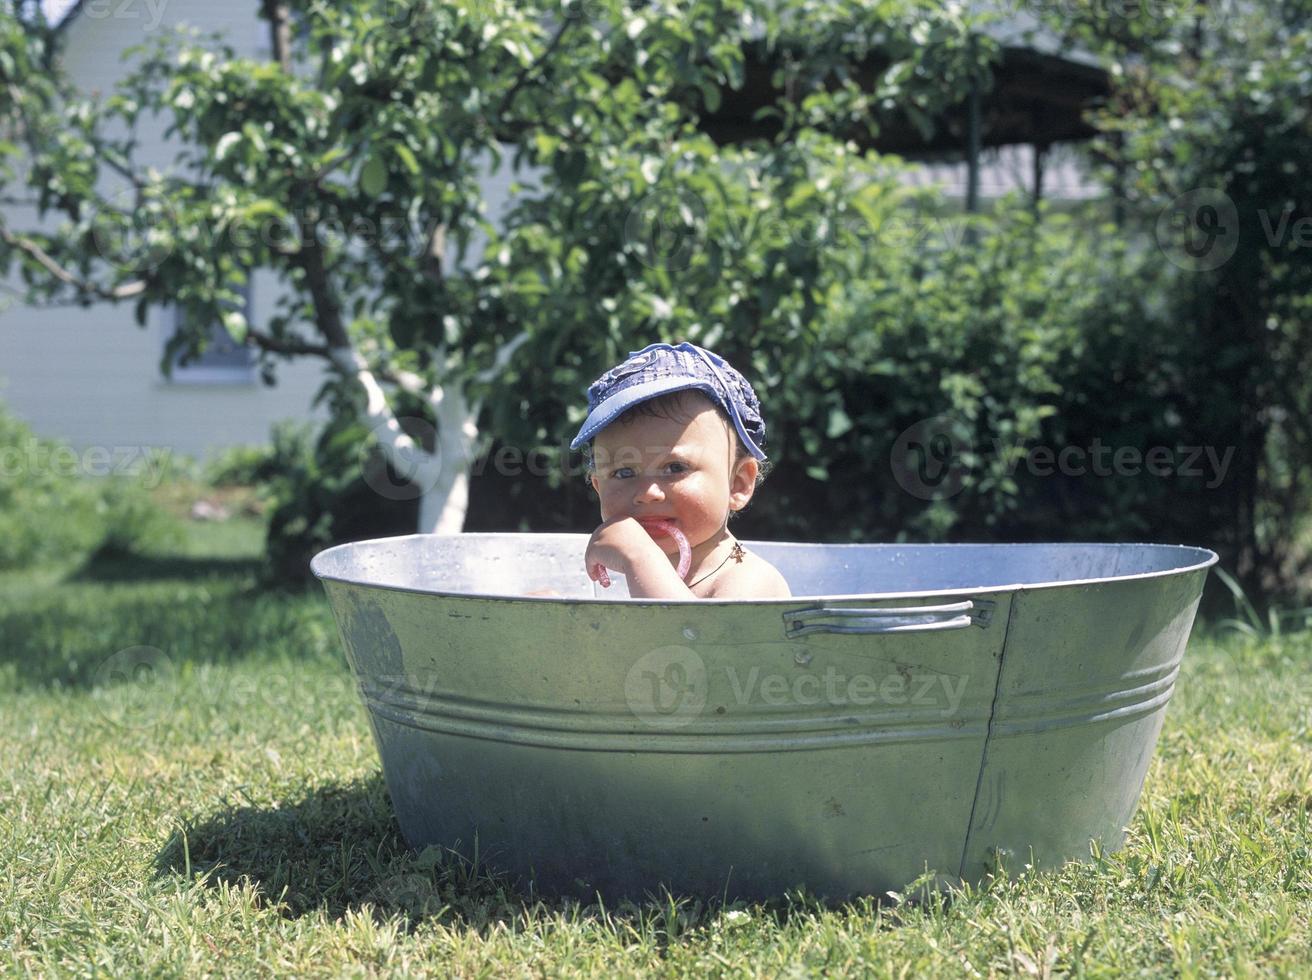 Beau petit garçon dans la baignoire pour enfant photographe posant photo